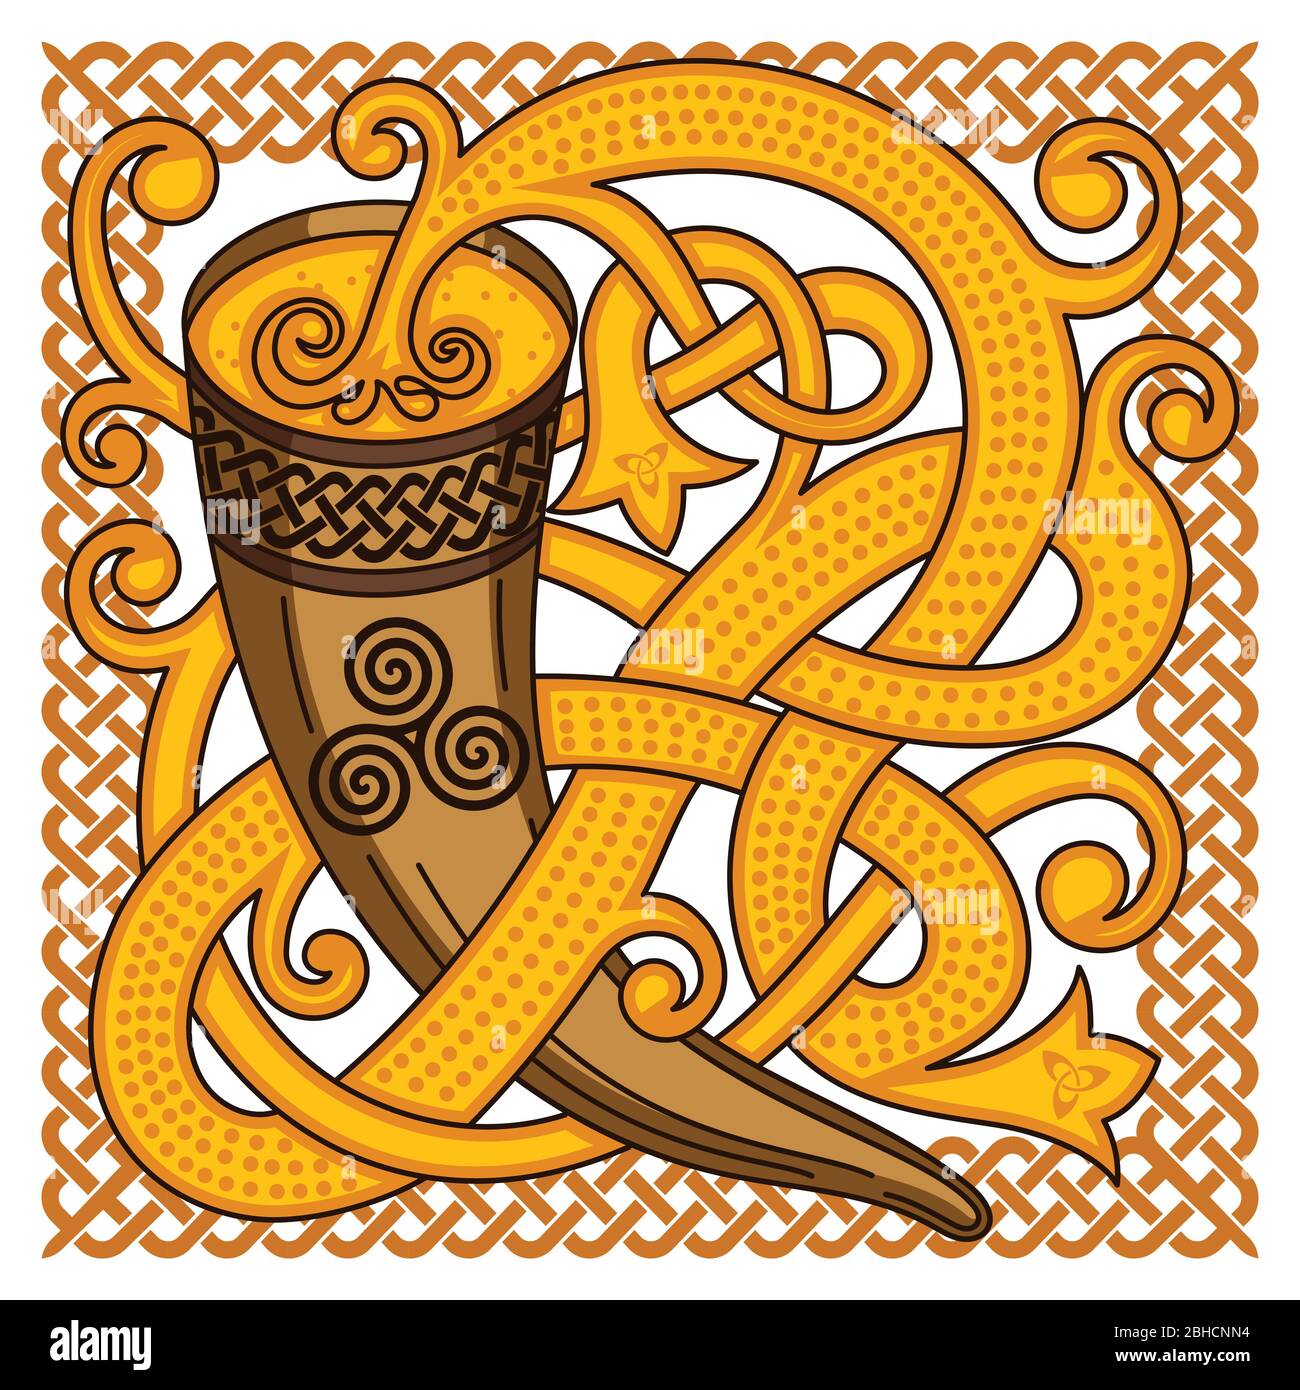 Keltisches, skandinavisches Design. Trinkhorn mit Met und gewebtem Muster Stock Vektor